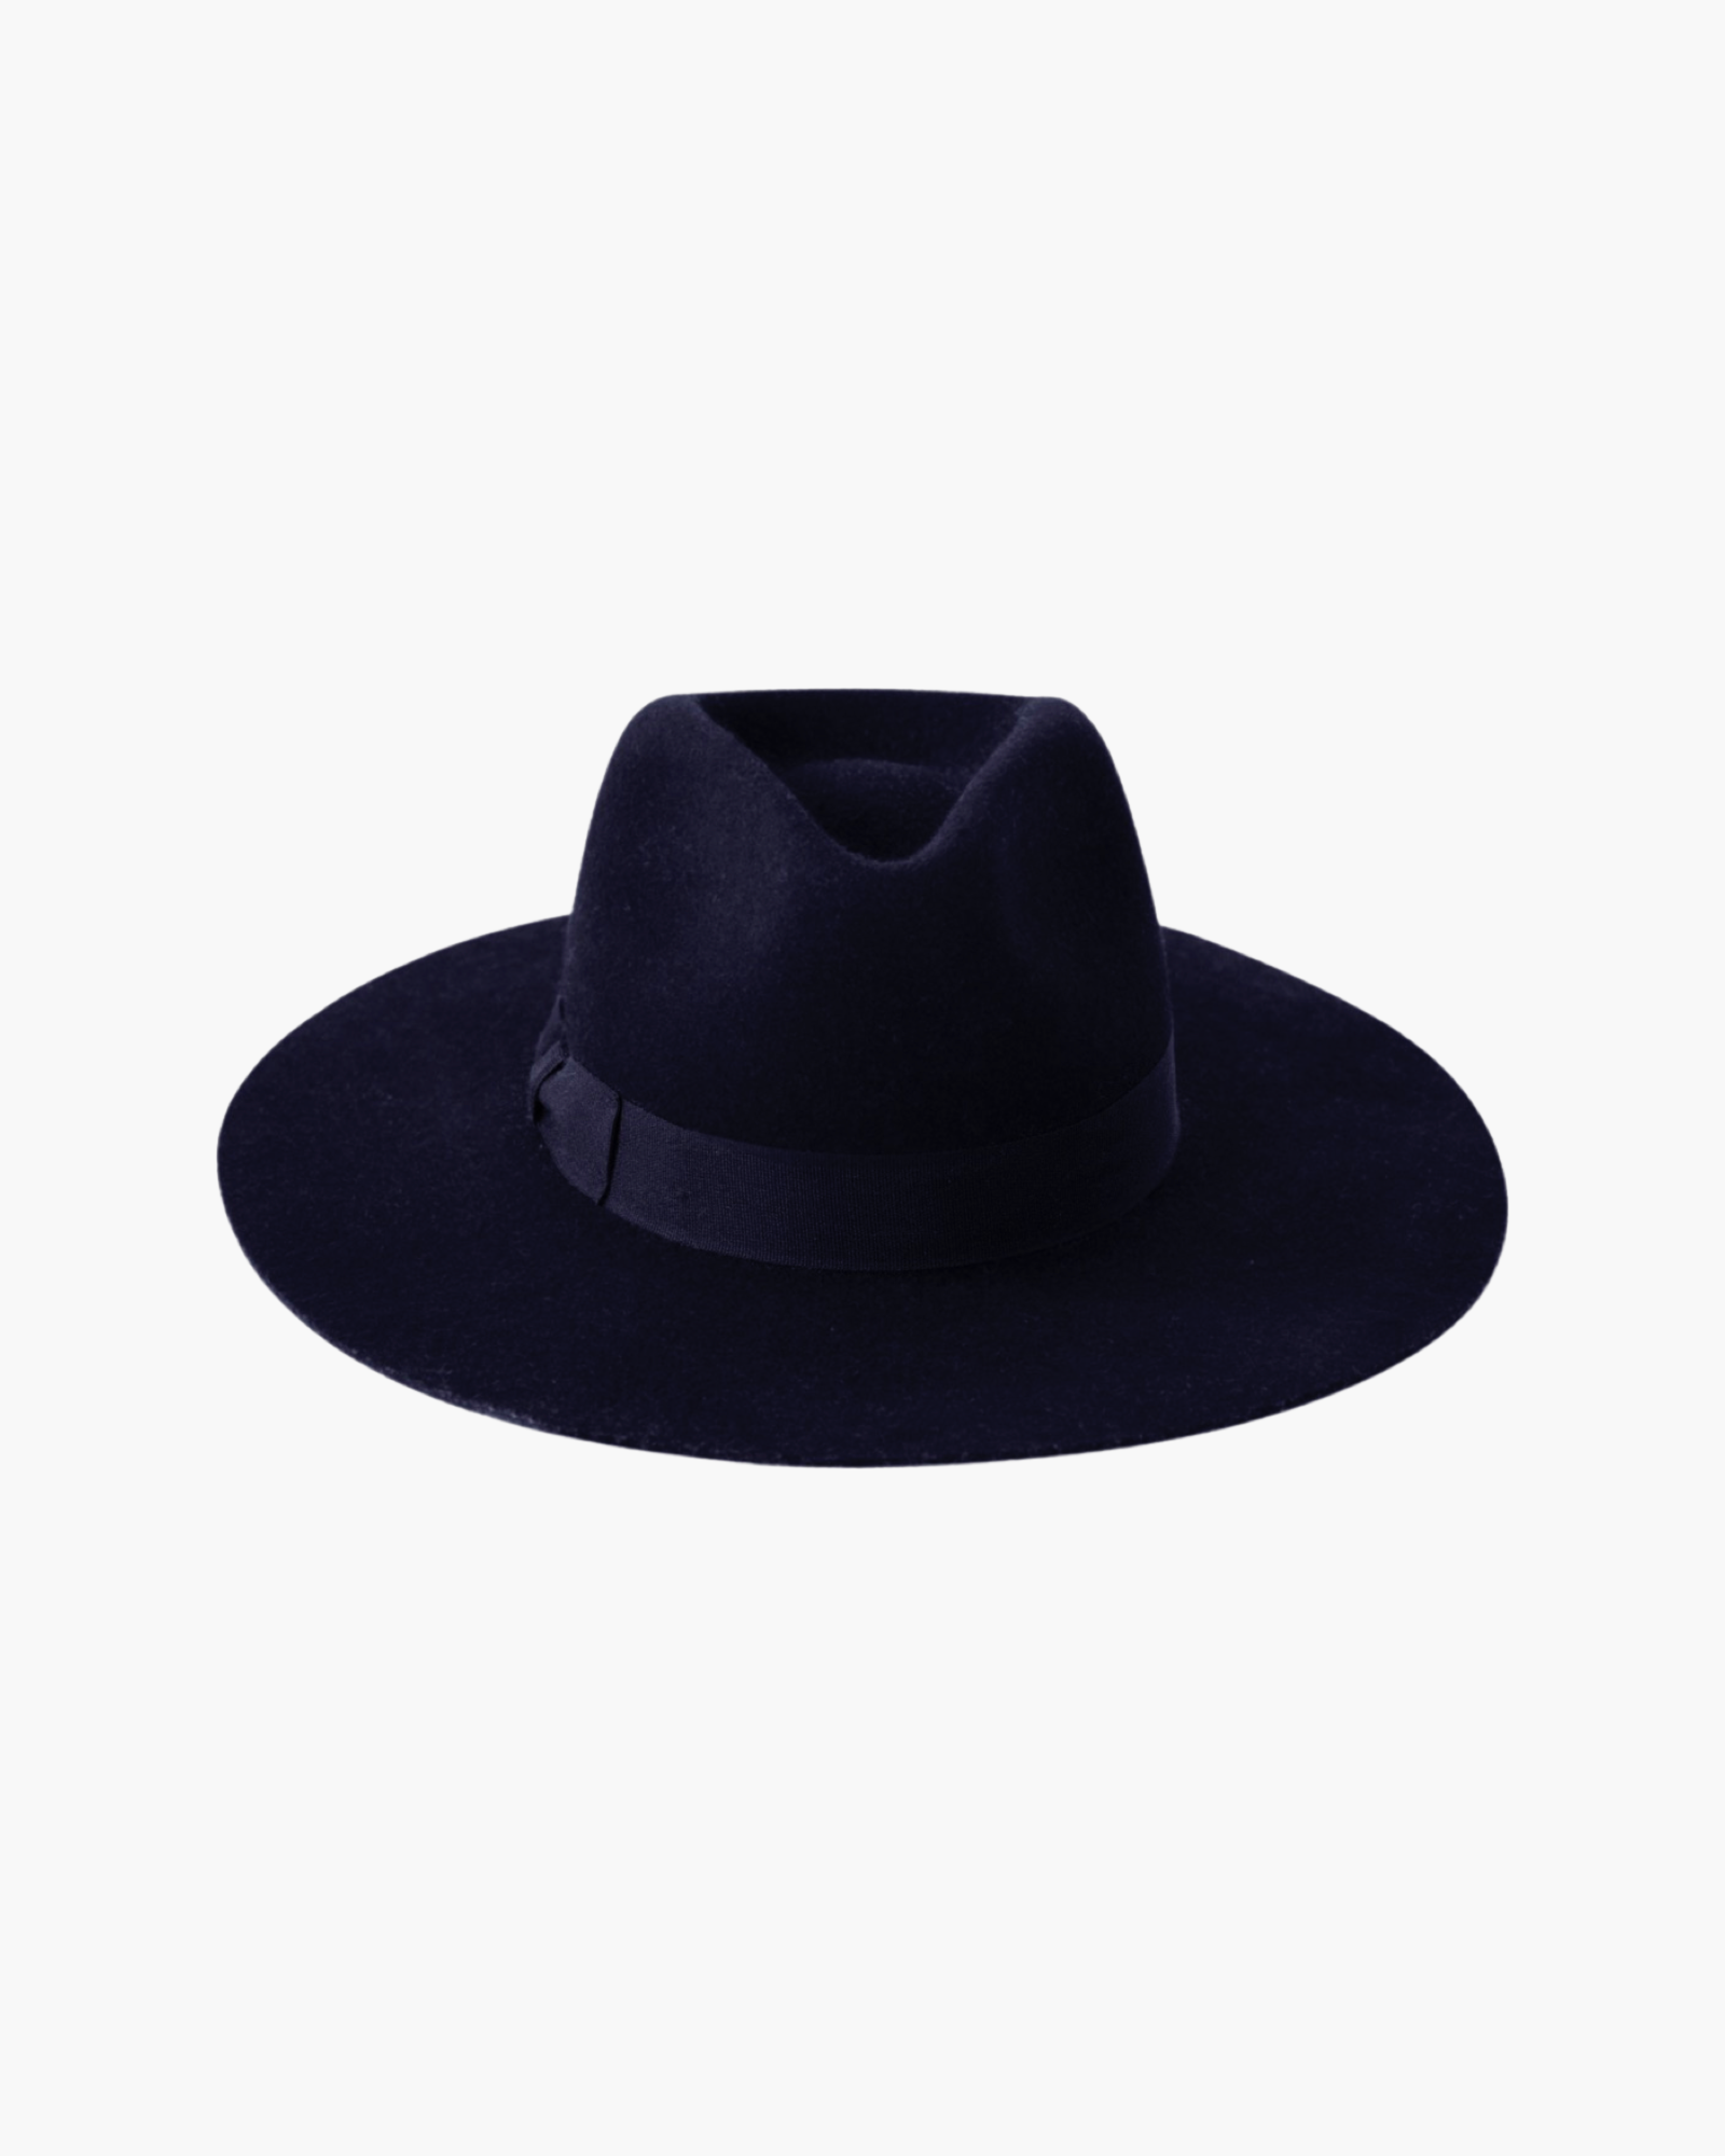 Rancher Wide Brim Hat - Midnight Blue